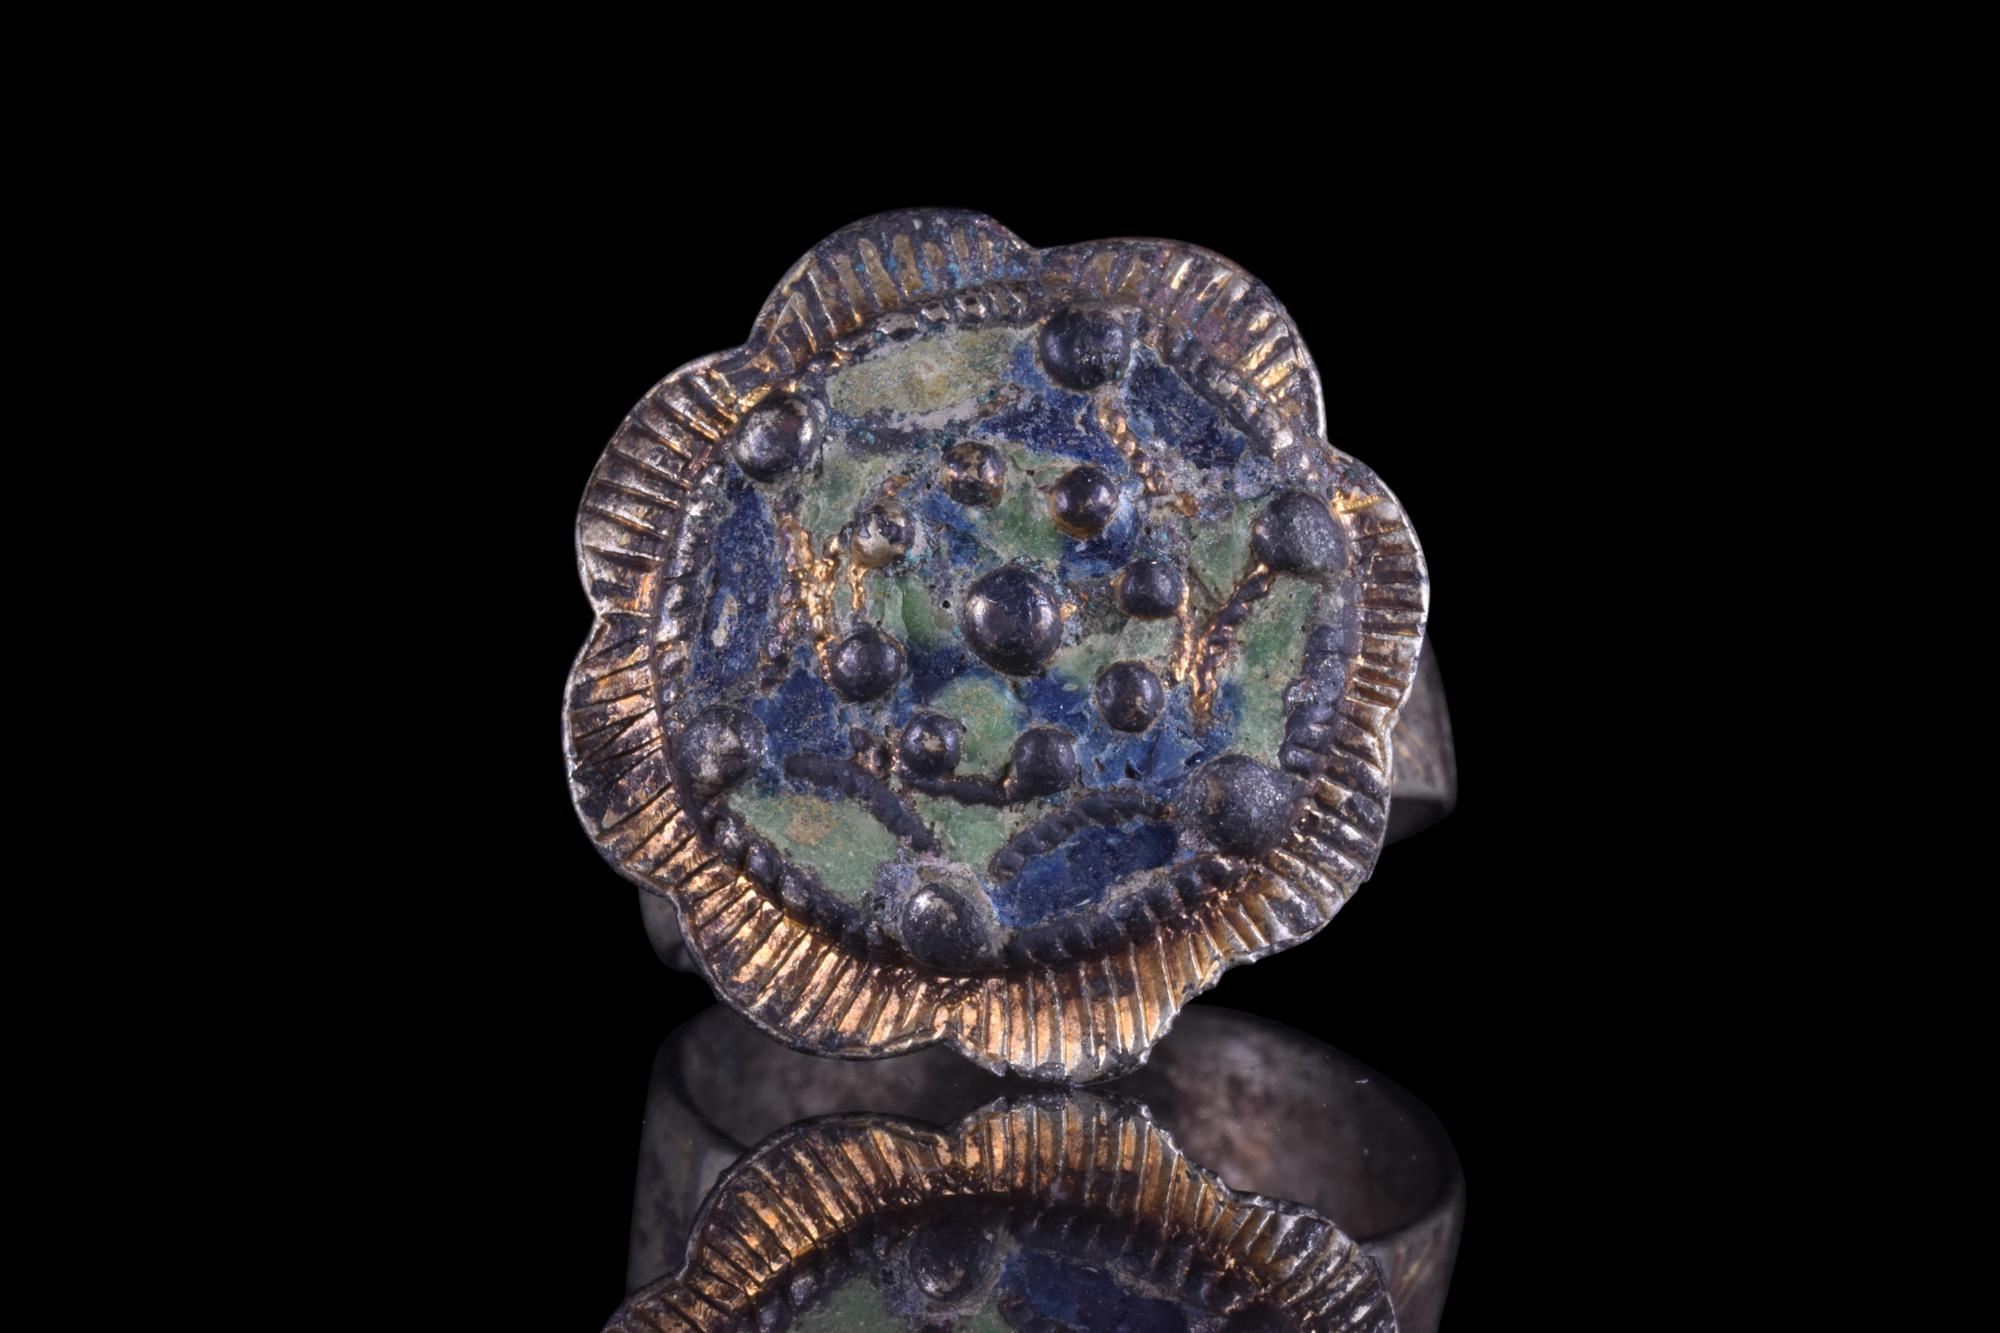 Une exquise bague de doigt en argent doré présentant un beau chaton en forme de fleur avec des bosses en relief et des restes d'émail bleu et vert. L'anneau est en outre orné de plusieurs détails complexes, notamment de délicates gravures sur les